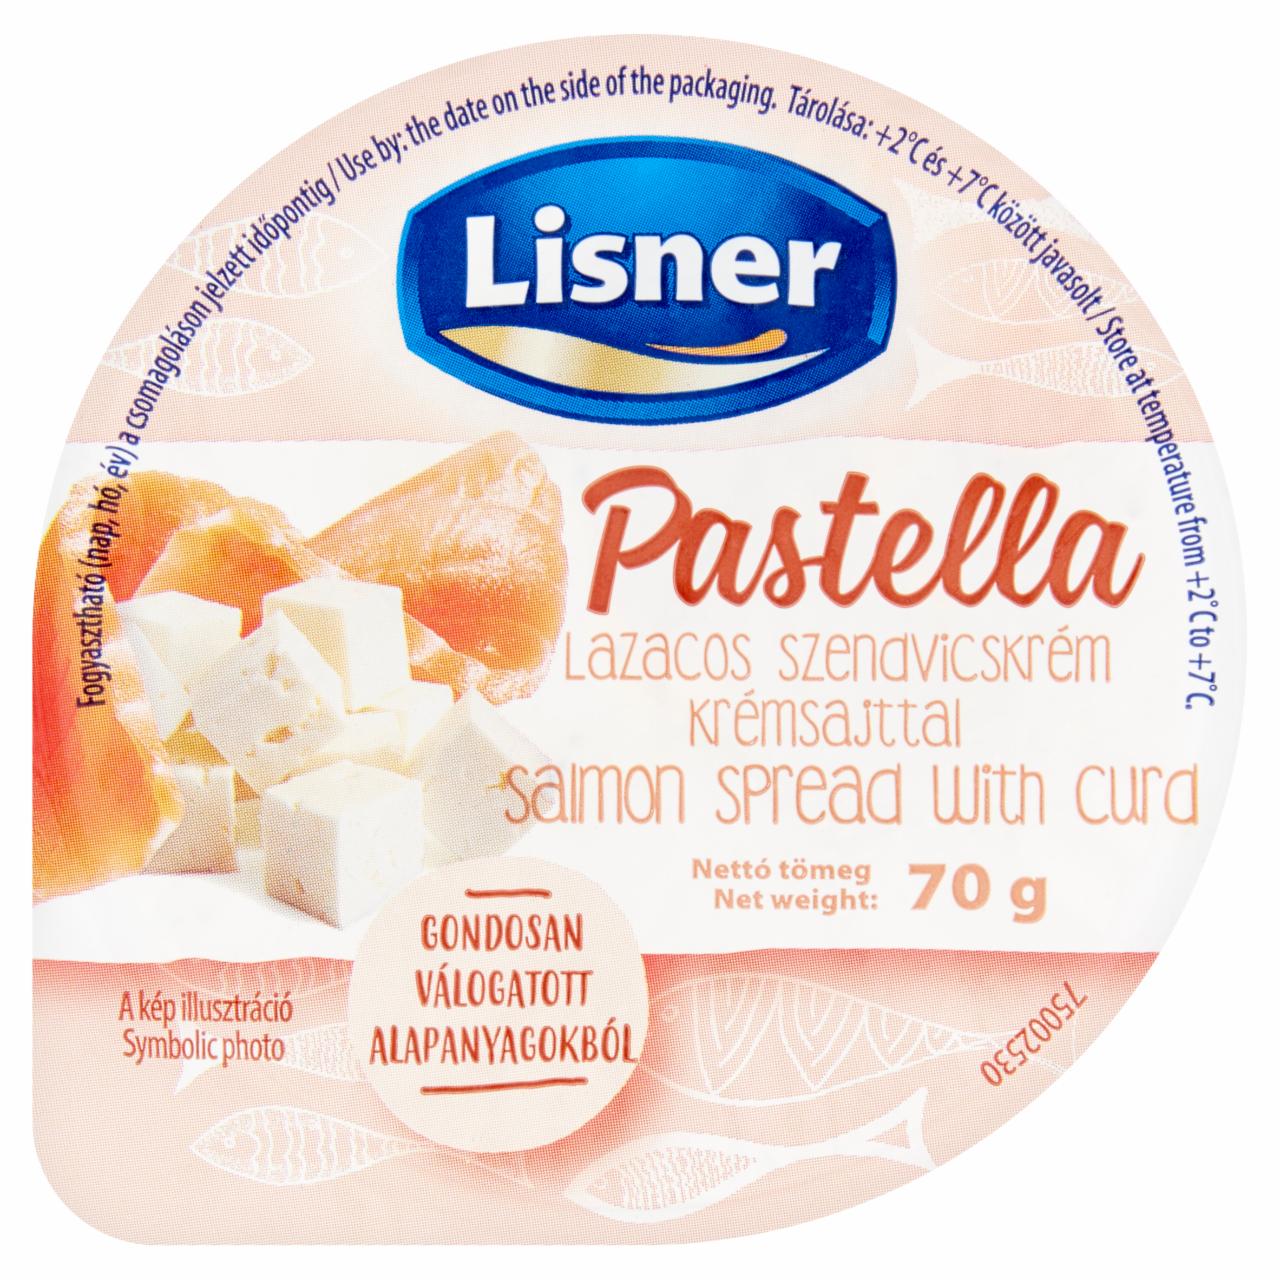 Képek - Lisner Pastella lazacos szendvicskrém krémsajttal 70 g